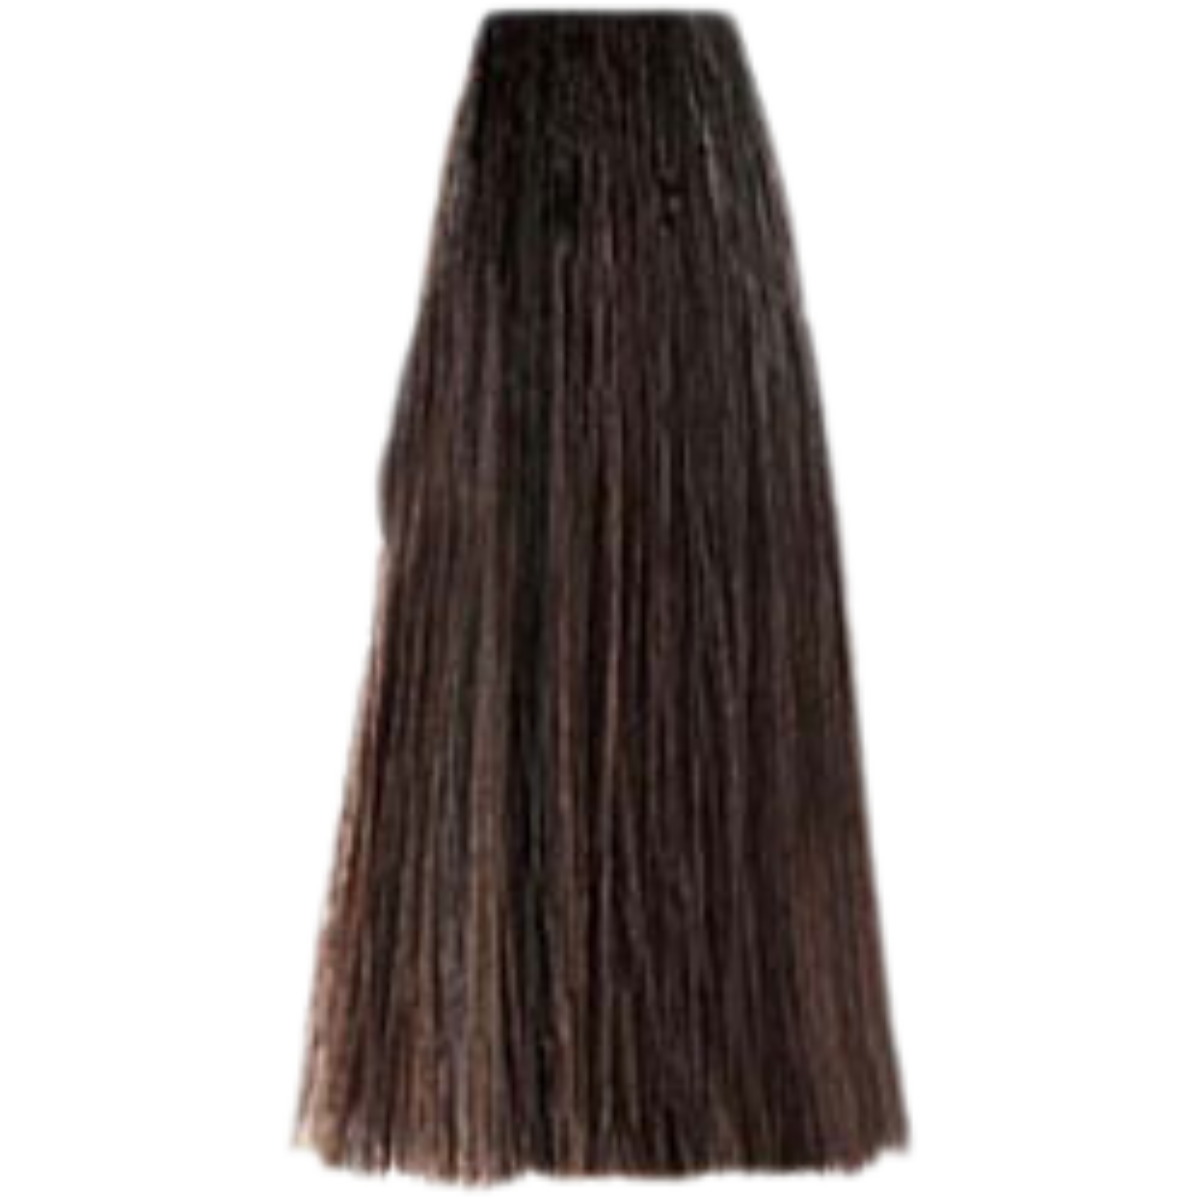 צבע שיער בסיס 6.00 DARK INTENSE BLONDE פארמויטה FarmaVita צבע לשיער 100 גרם